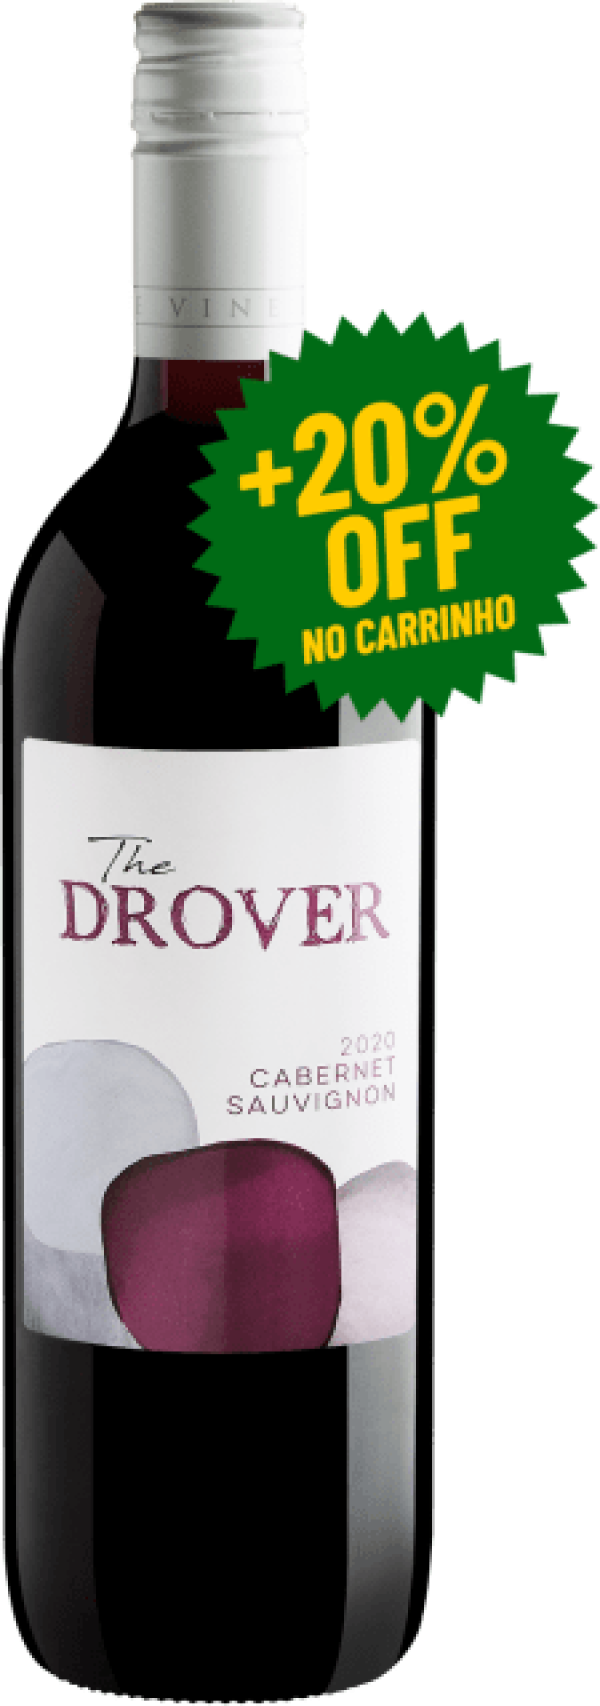 The Drover Cabernet Sauvignon 2020